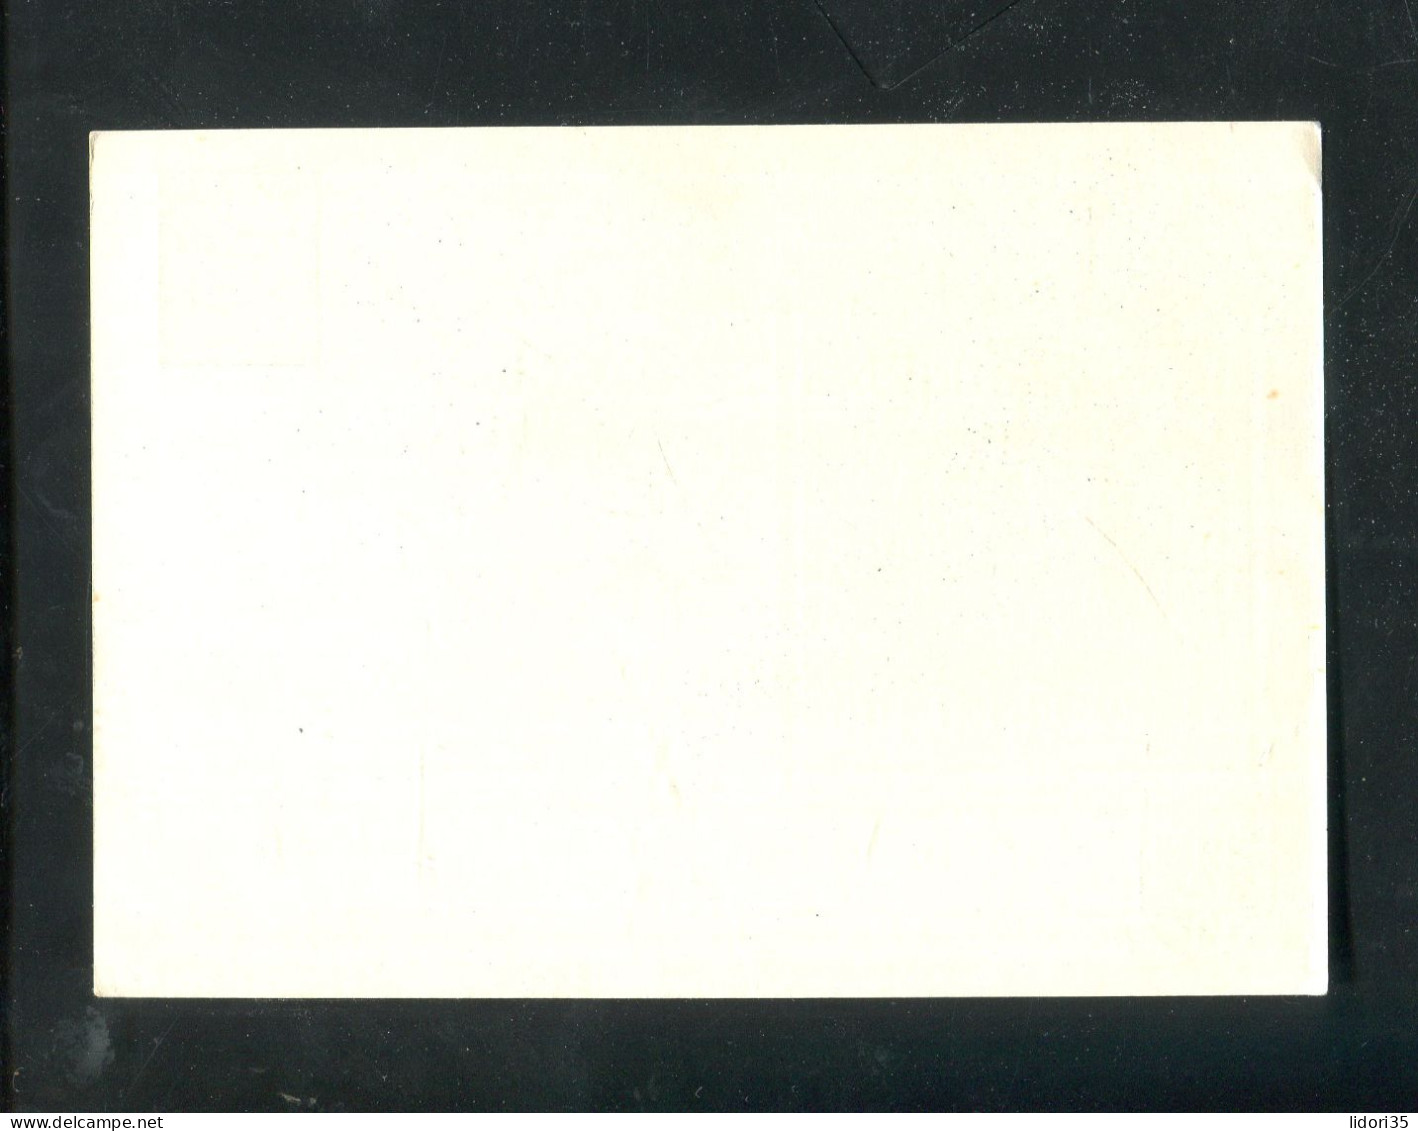 "DEUTSCHES REICH" 1939, Privat-Postkarte "45. Deutscher Philatelistentag Muenchen" ** (70139) - Privat-Ganzsachen